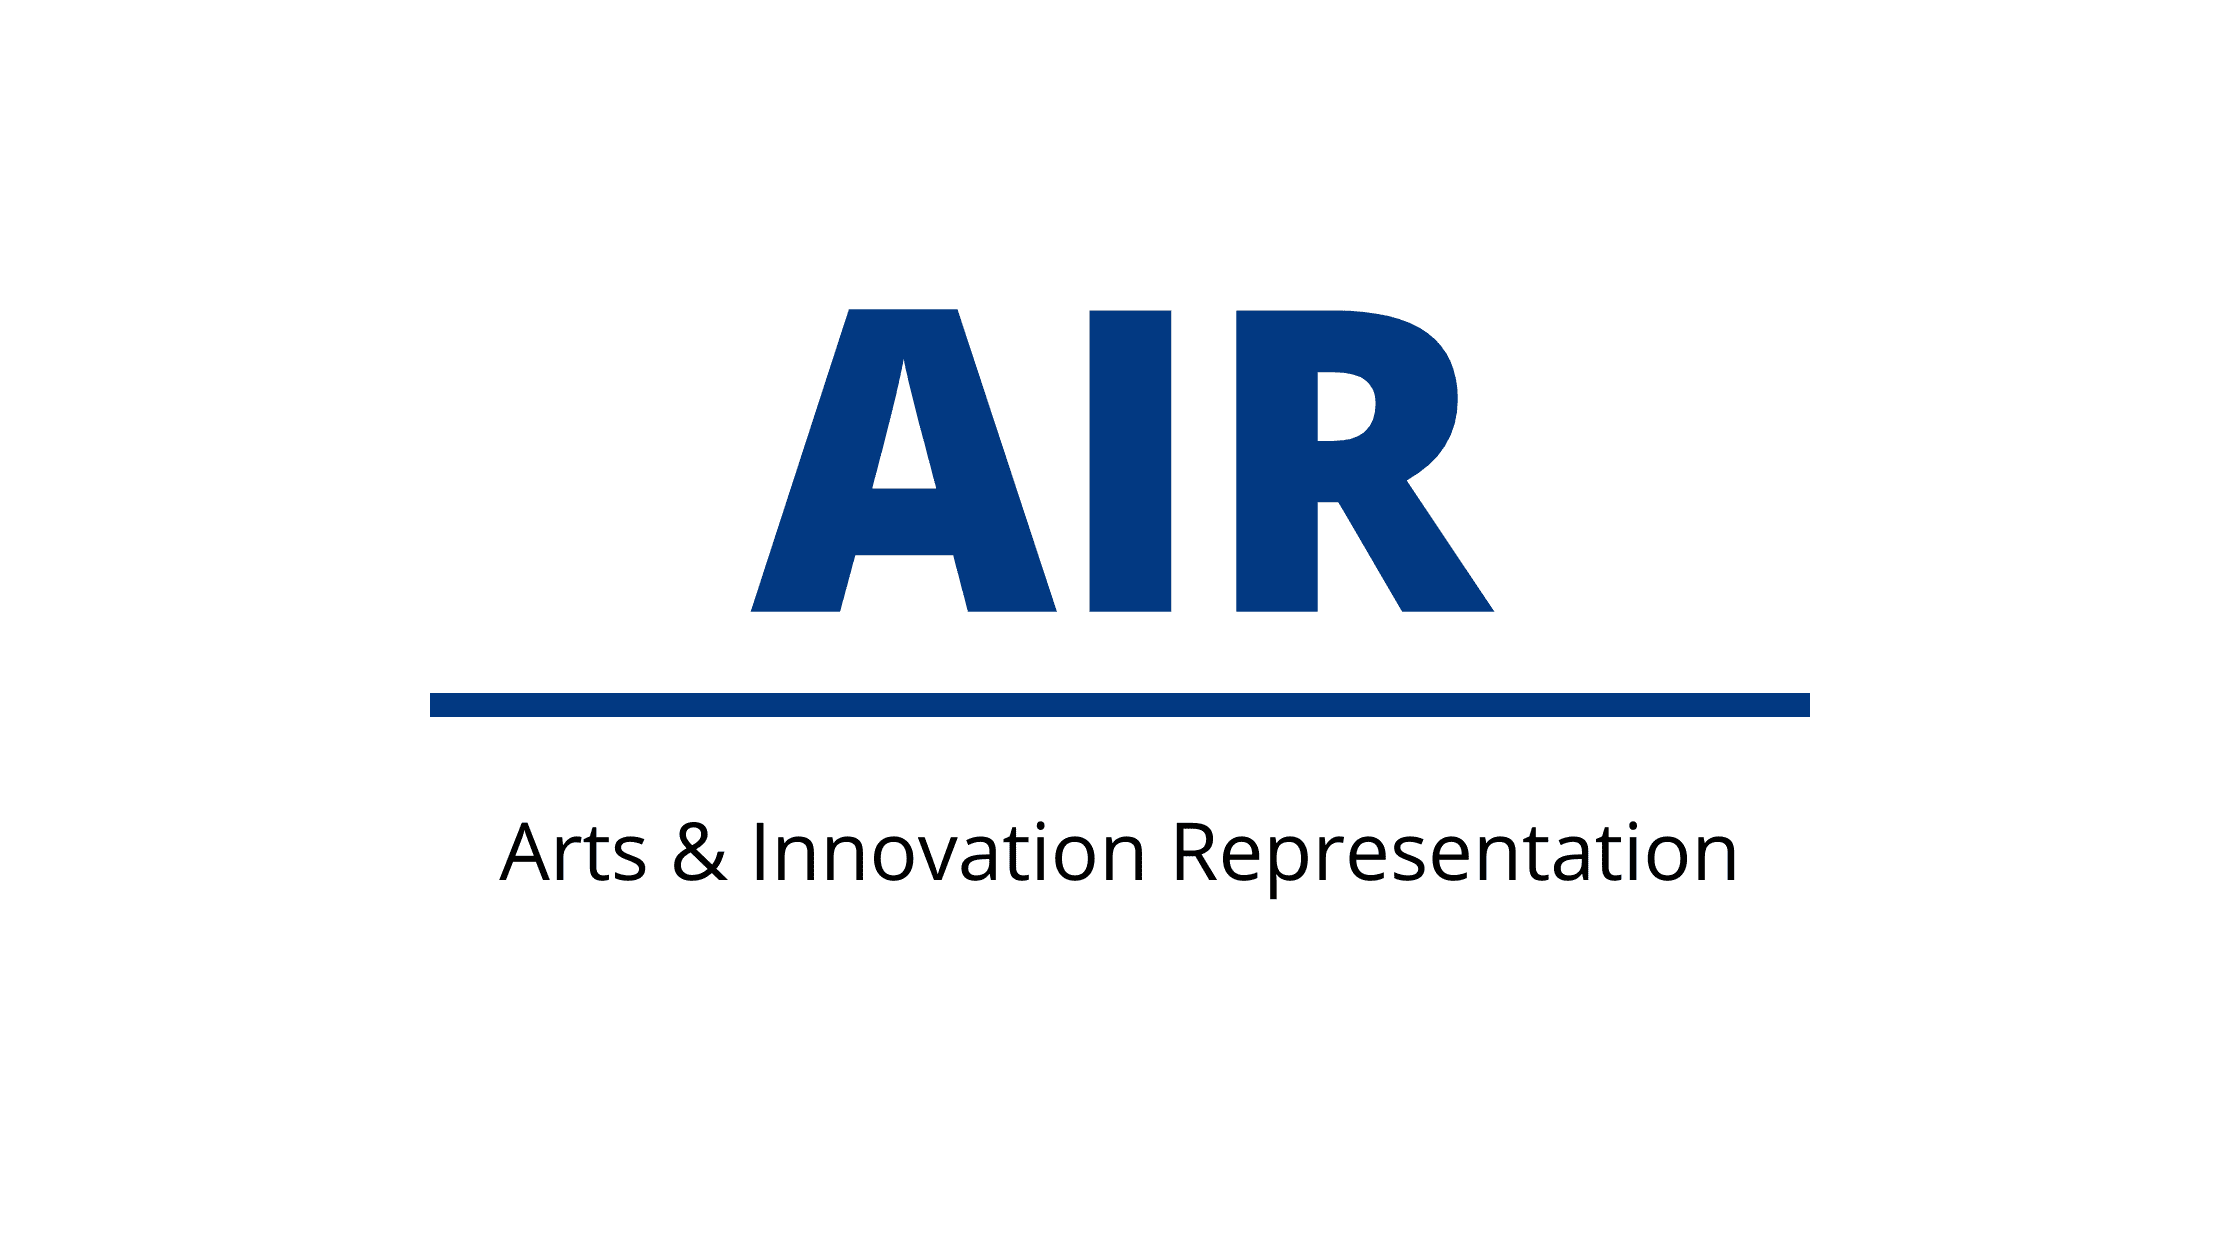 AIR (Arts & Innovation Representation) logo